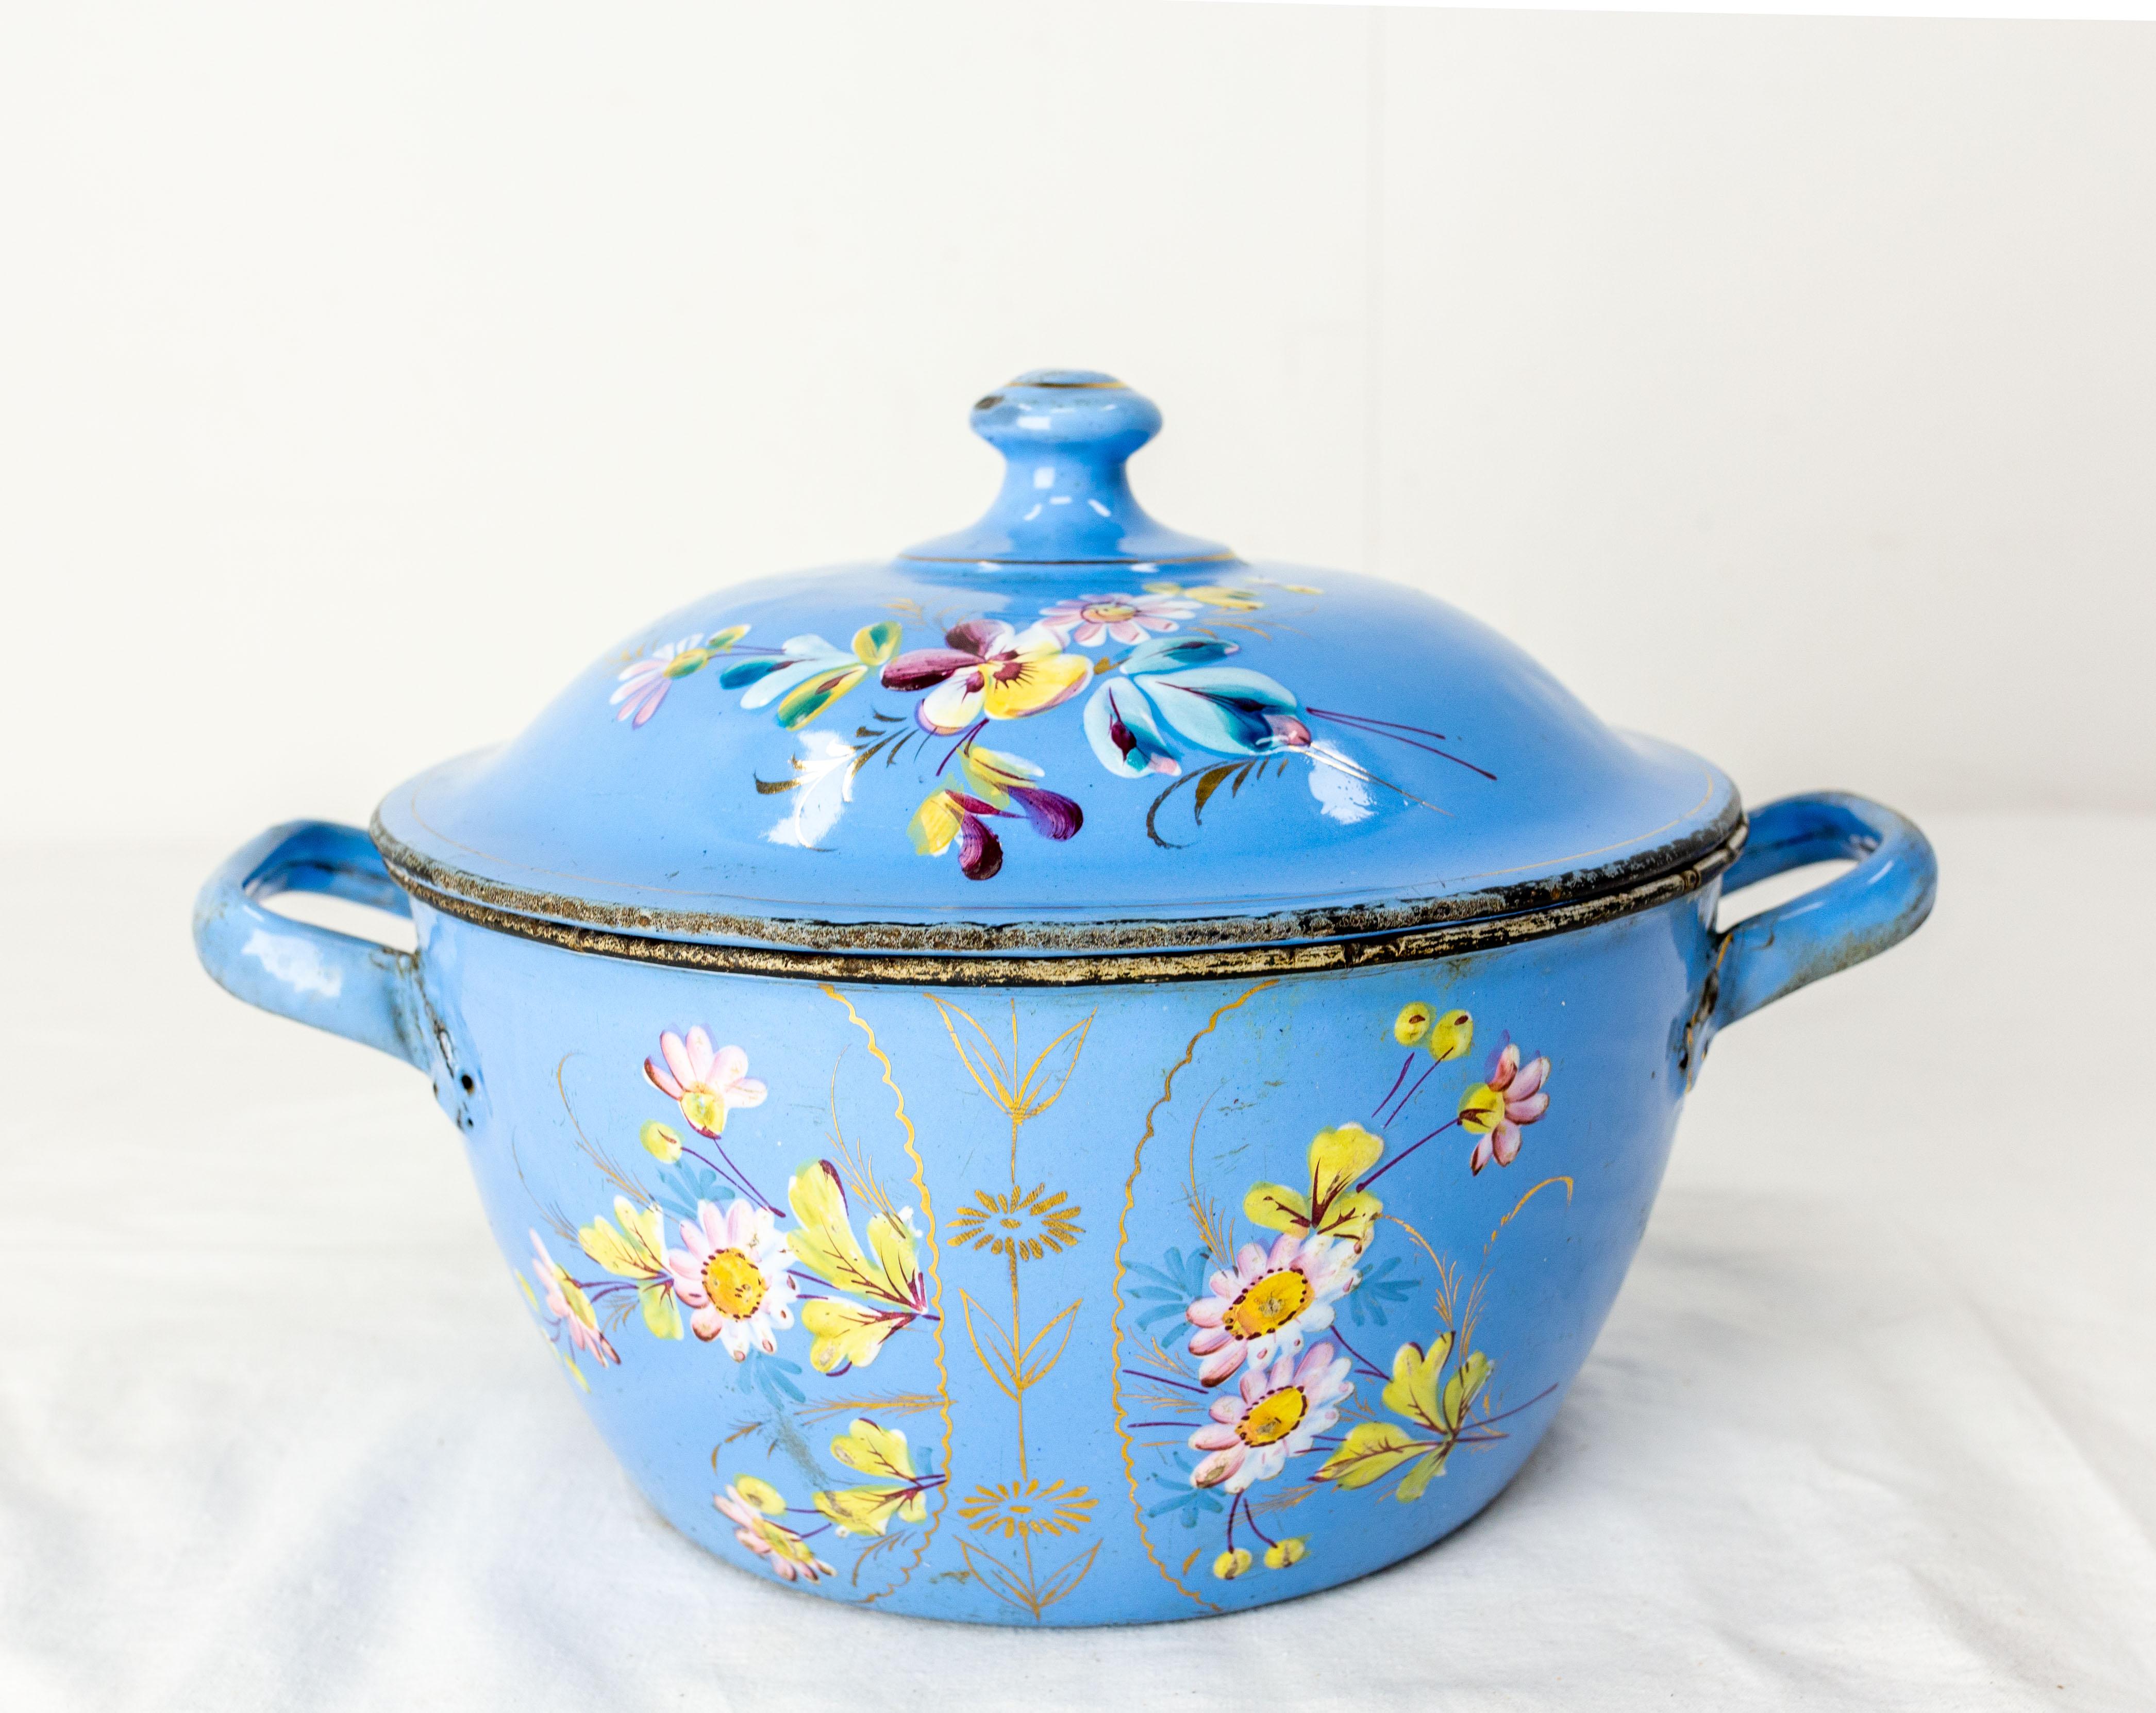 Soufflet ou bol à soupe.
Soupière en fer bleu et blanc avec décoration florale sur le dessus et sur le bol.
vers 1900
Bon état.

Expédition :
L23 P23 H13,5 1Kg.